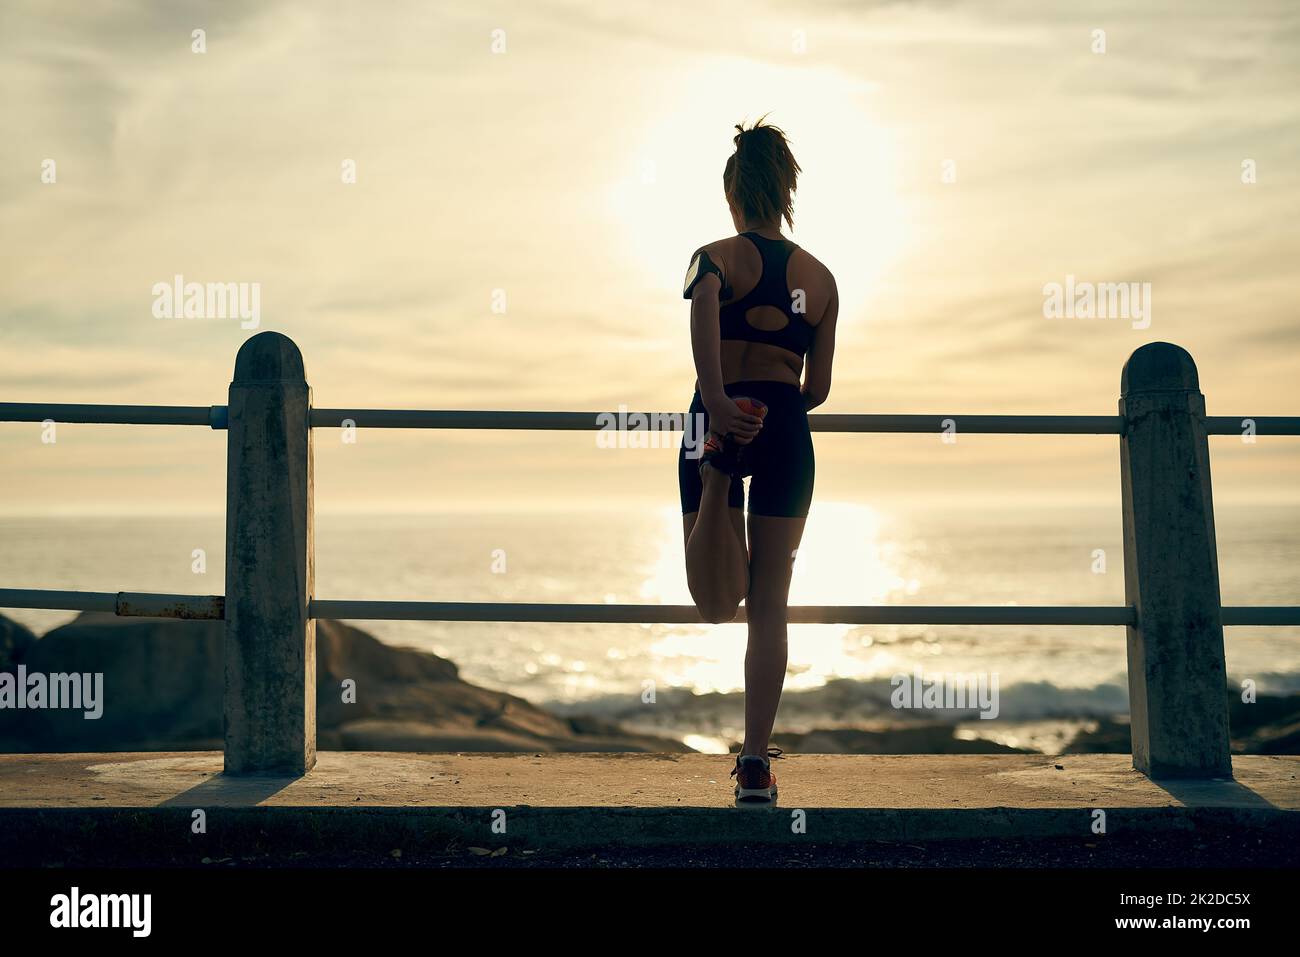 Gire la cabeza por las razones correctas. Foto de una joven mujer deportiva corriendo fuera. Foto de stock